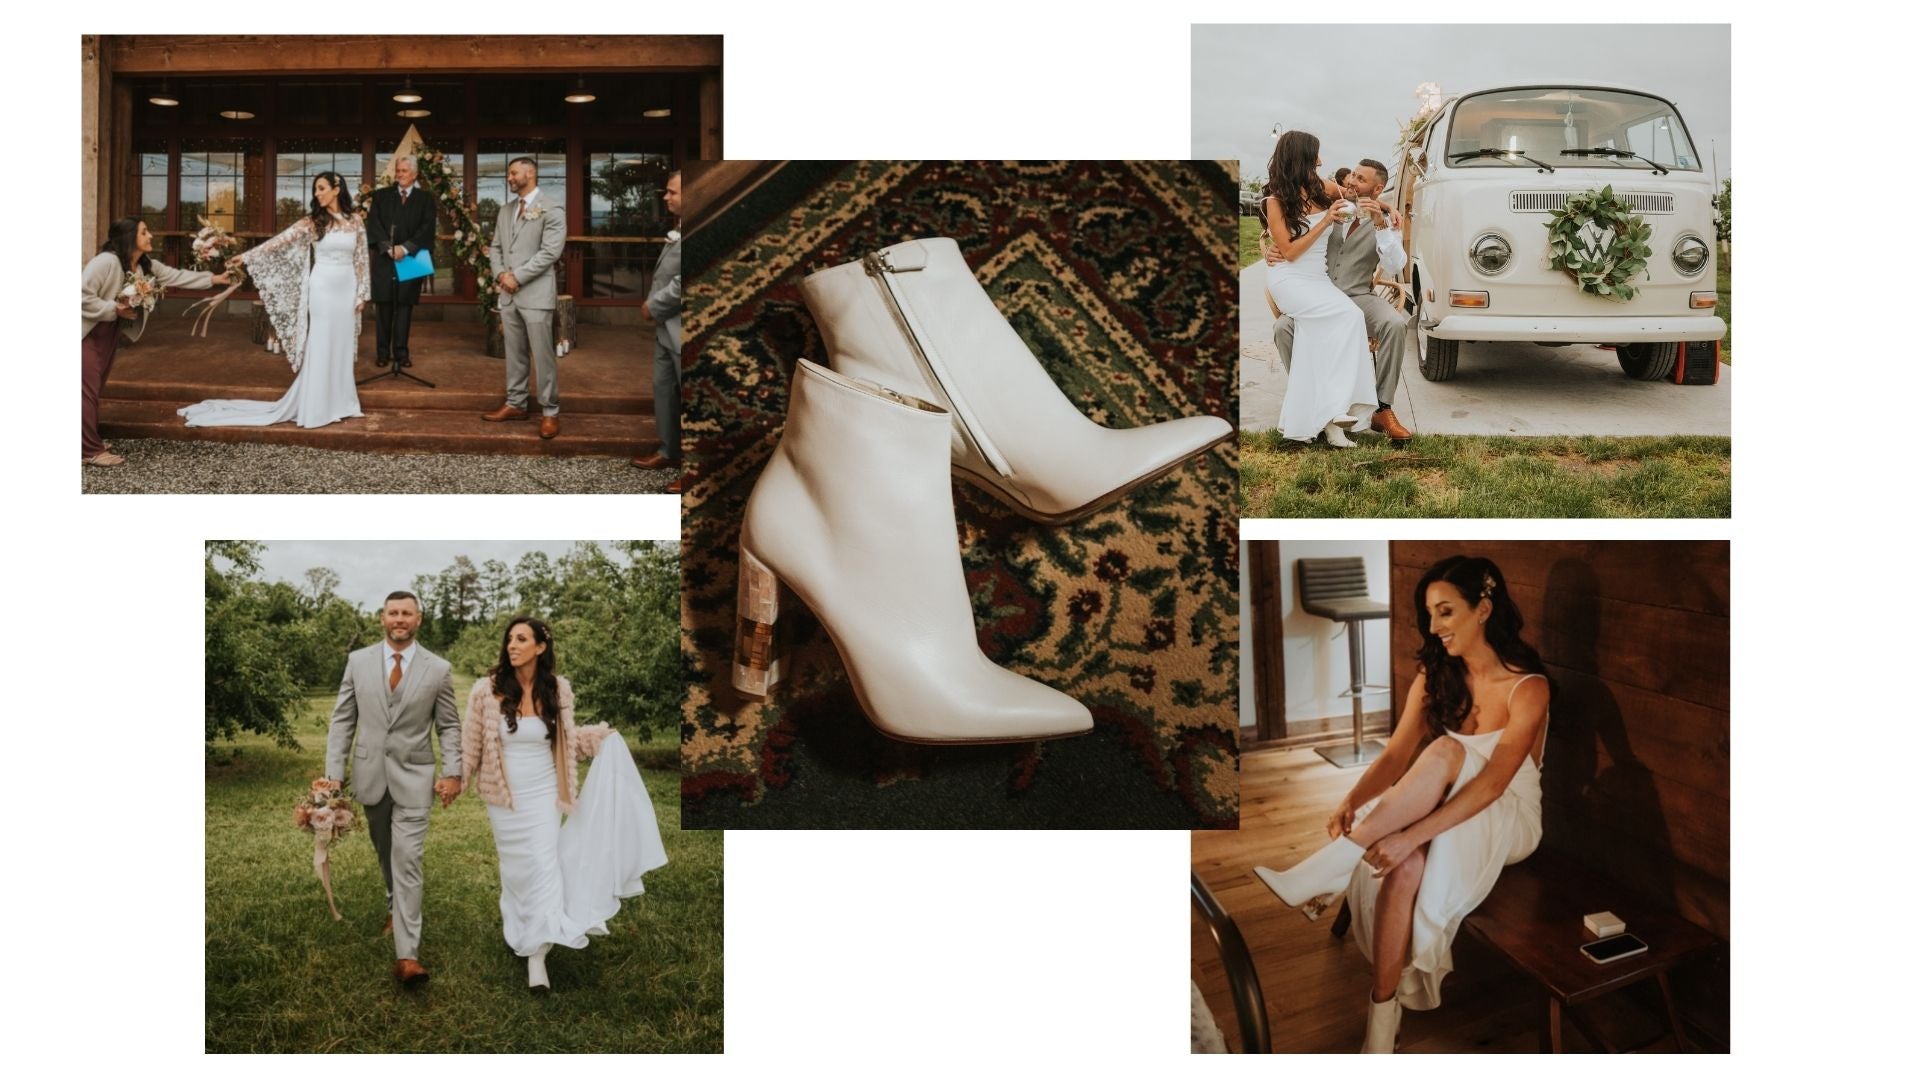 Designer bridal ivory shoes luxury american wedding inspiration